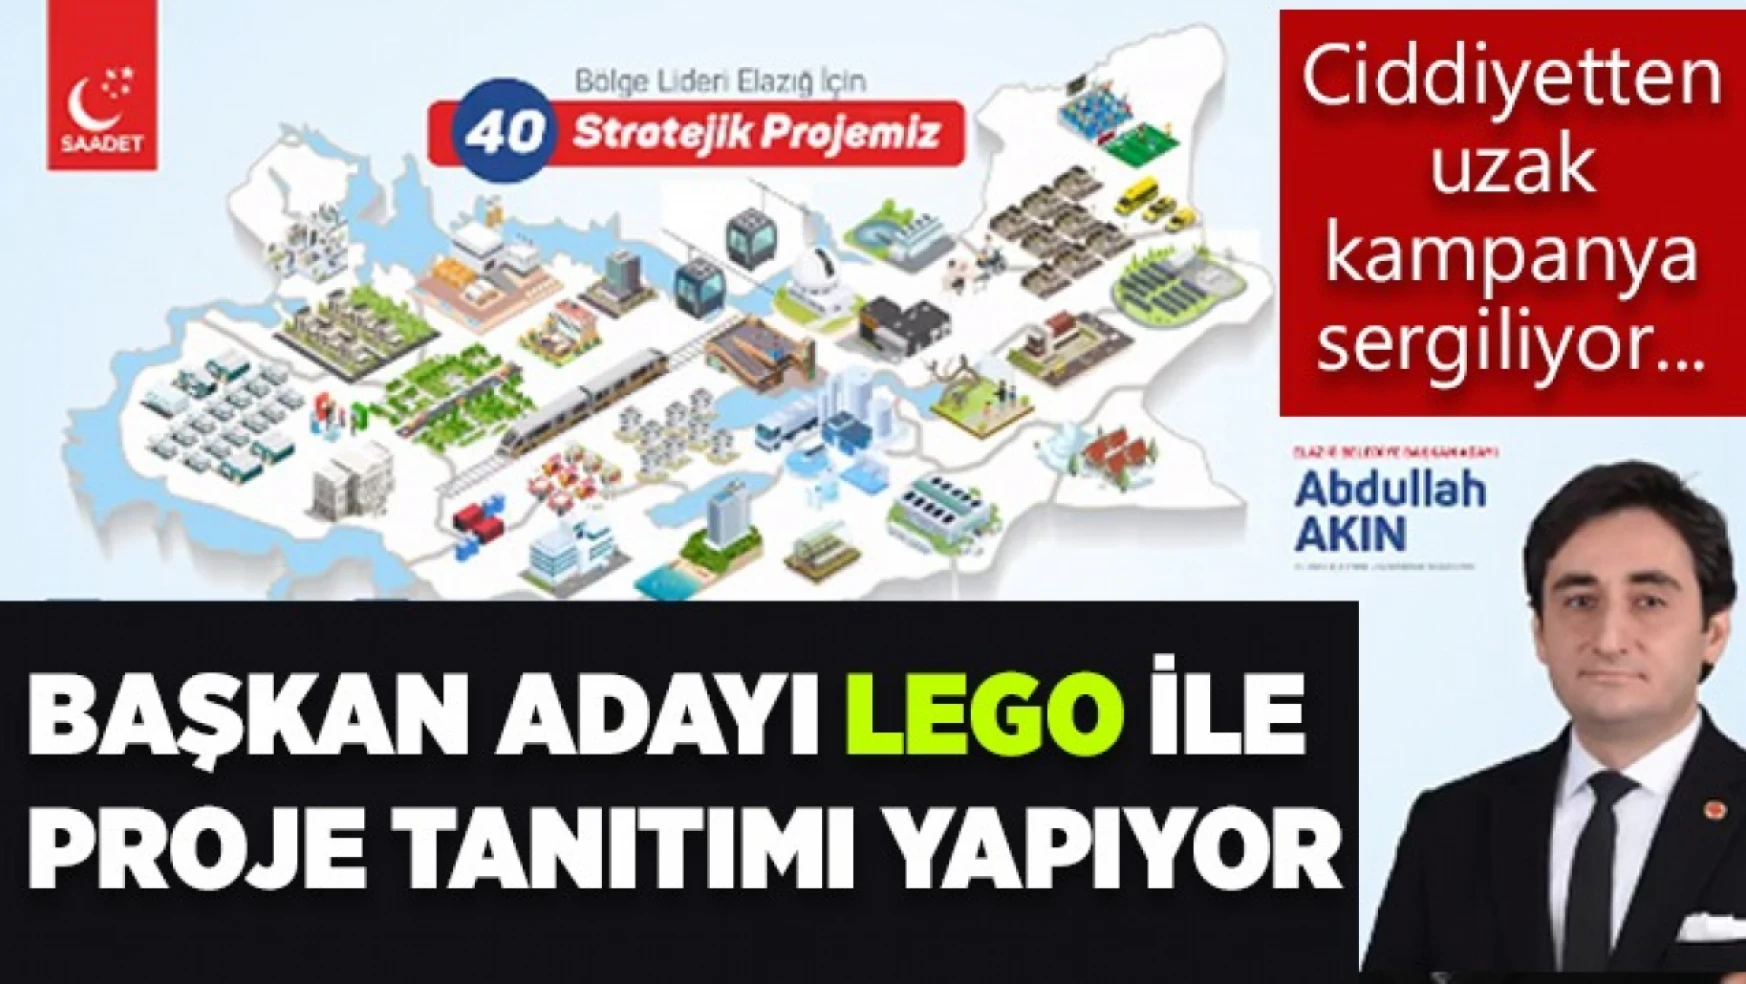 Elazığ'da Legolu Seçim Kampanyası